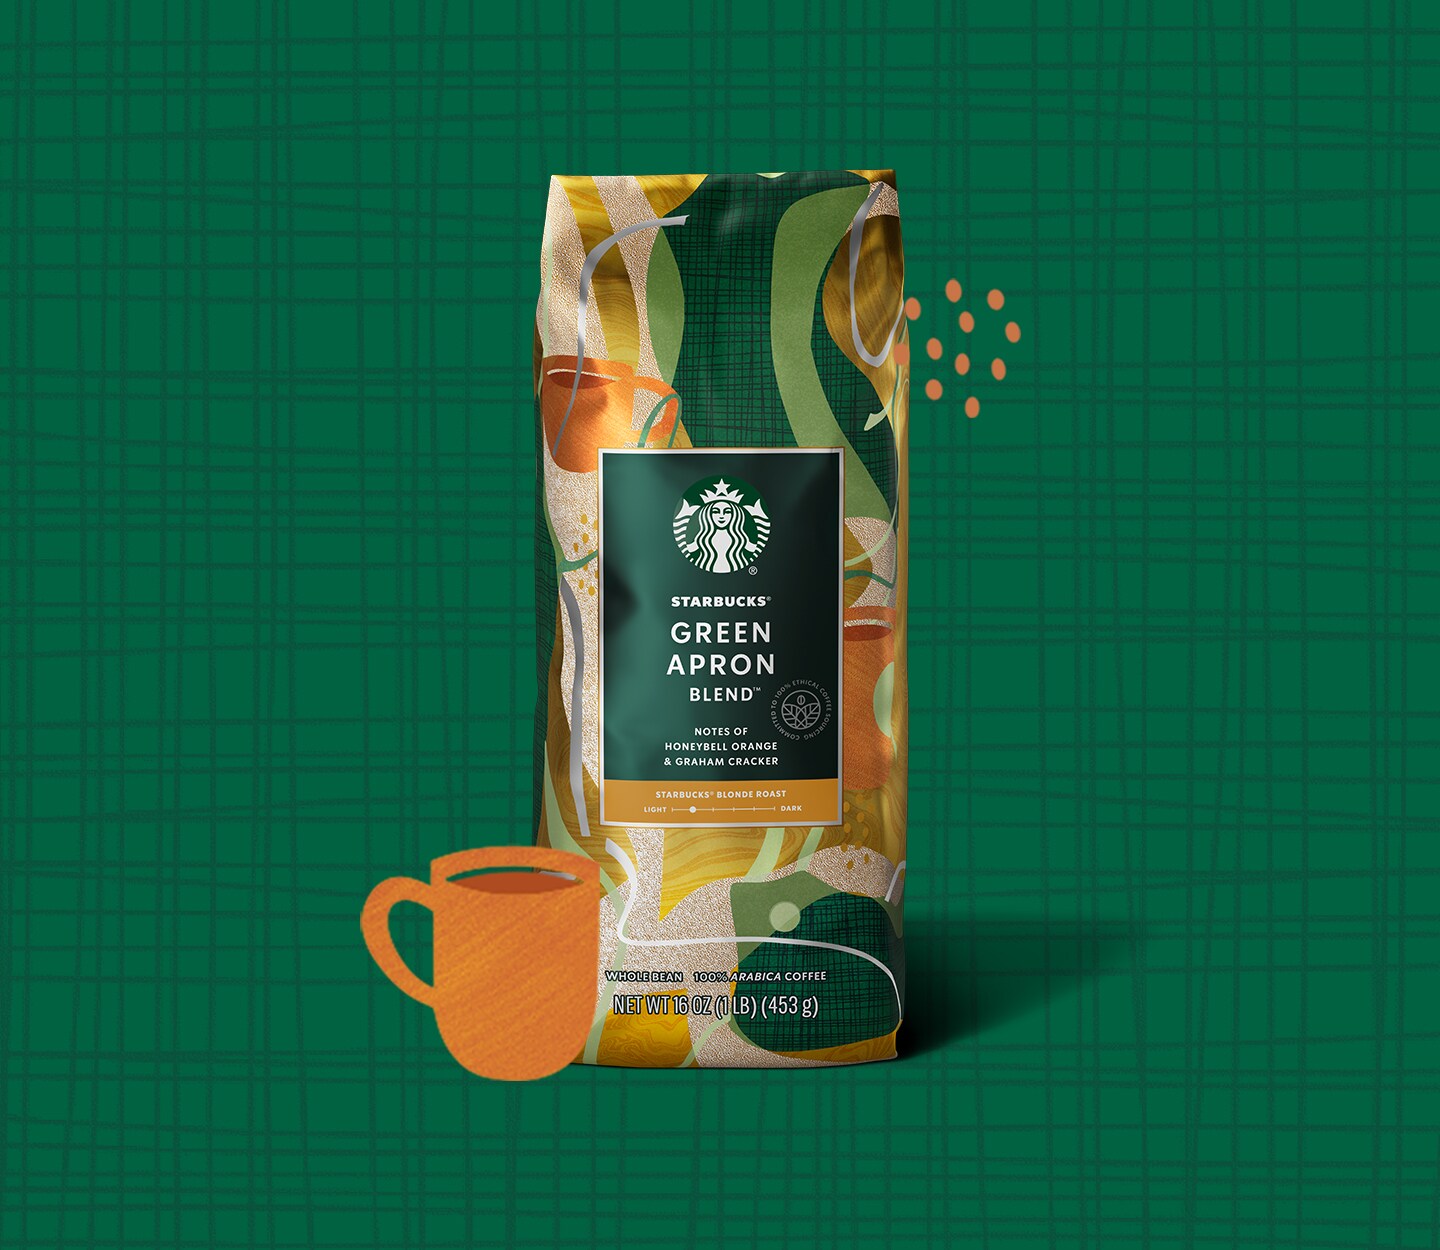 Une tasse de café illustrée à côté d’un paquet du Mélange Tablier vert devant un fond vert Starbucks.